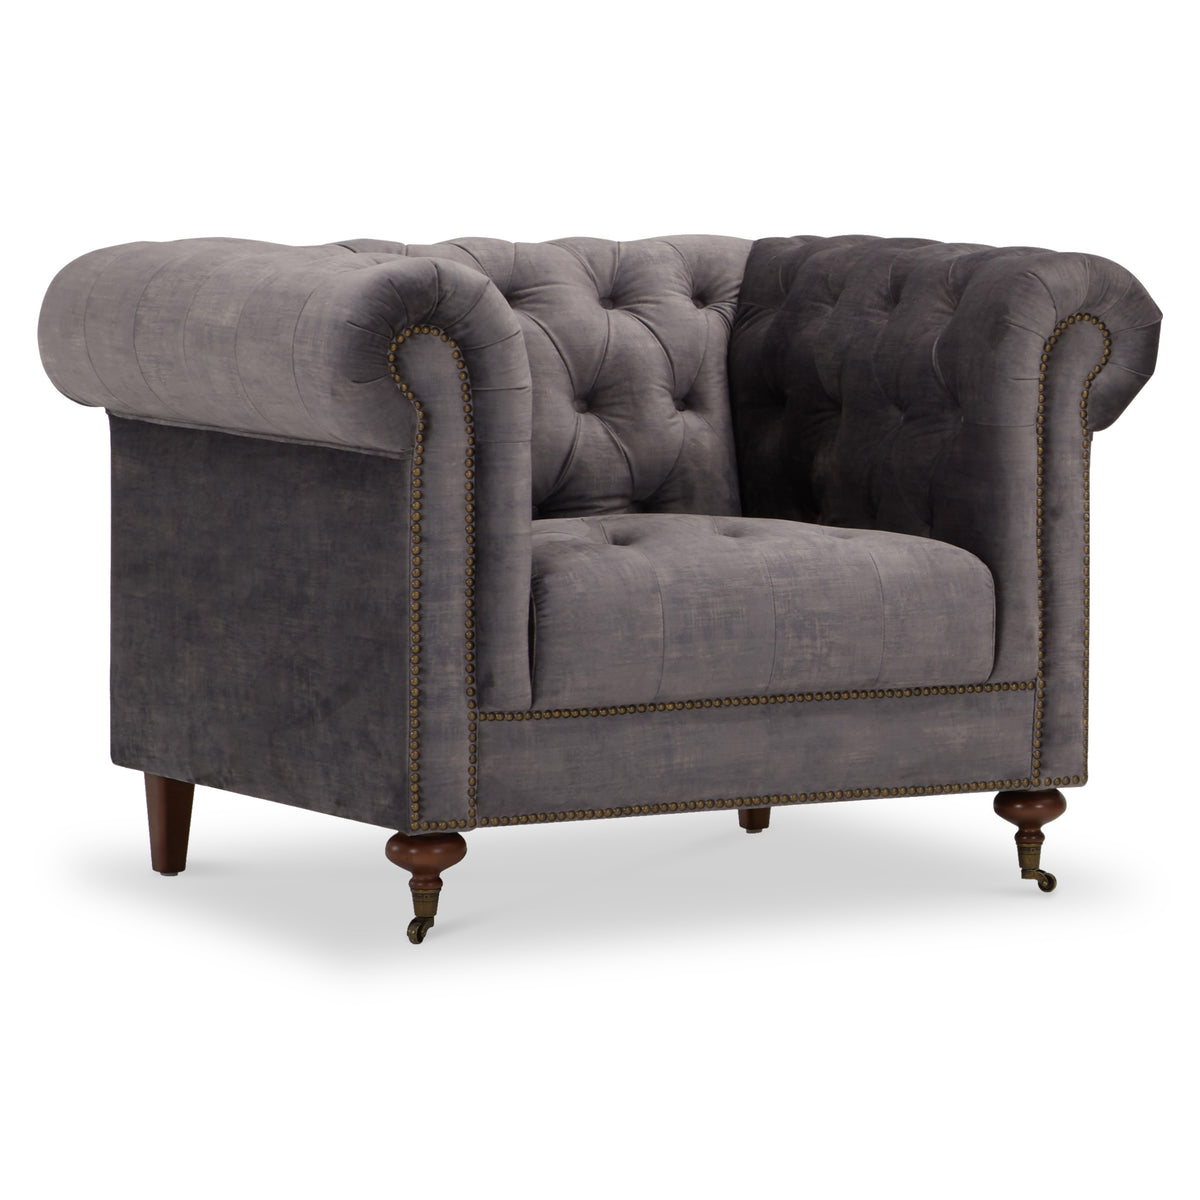 Stanhope Steel Grey Velvet Armchair from Roseland Furniture